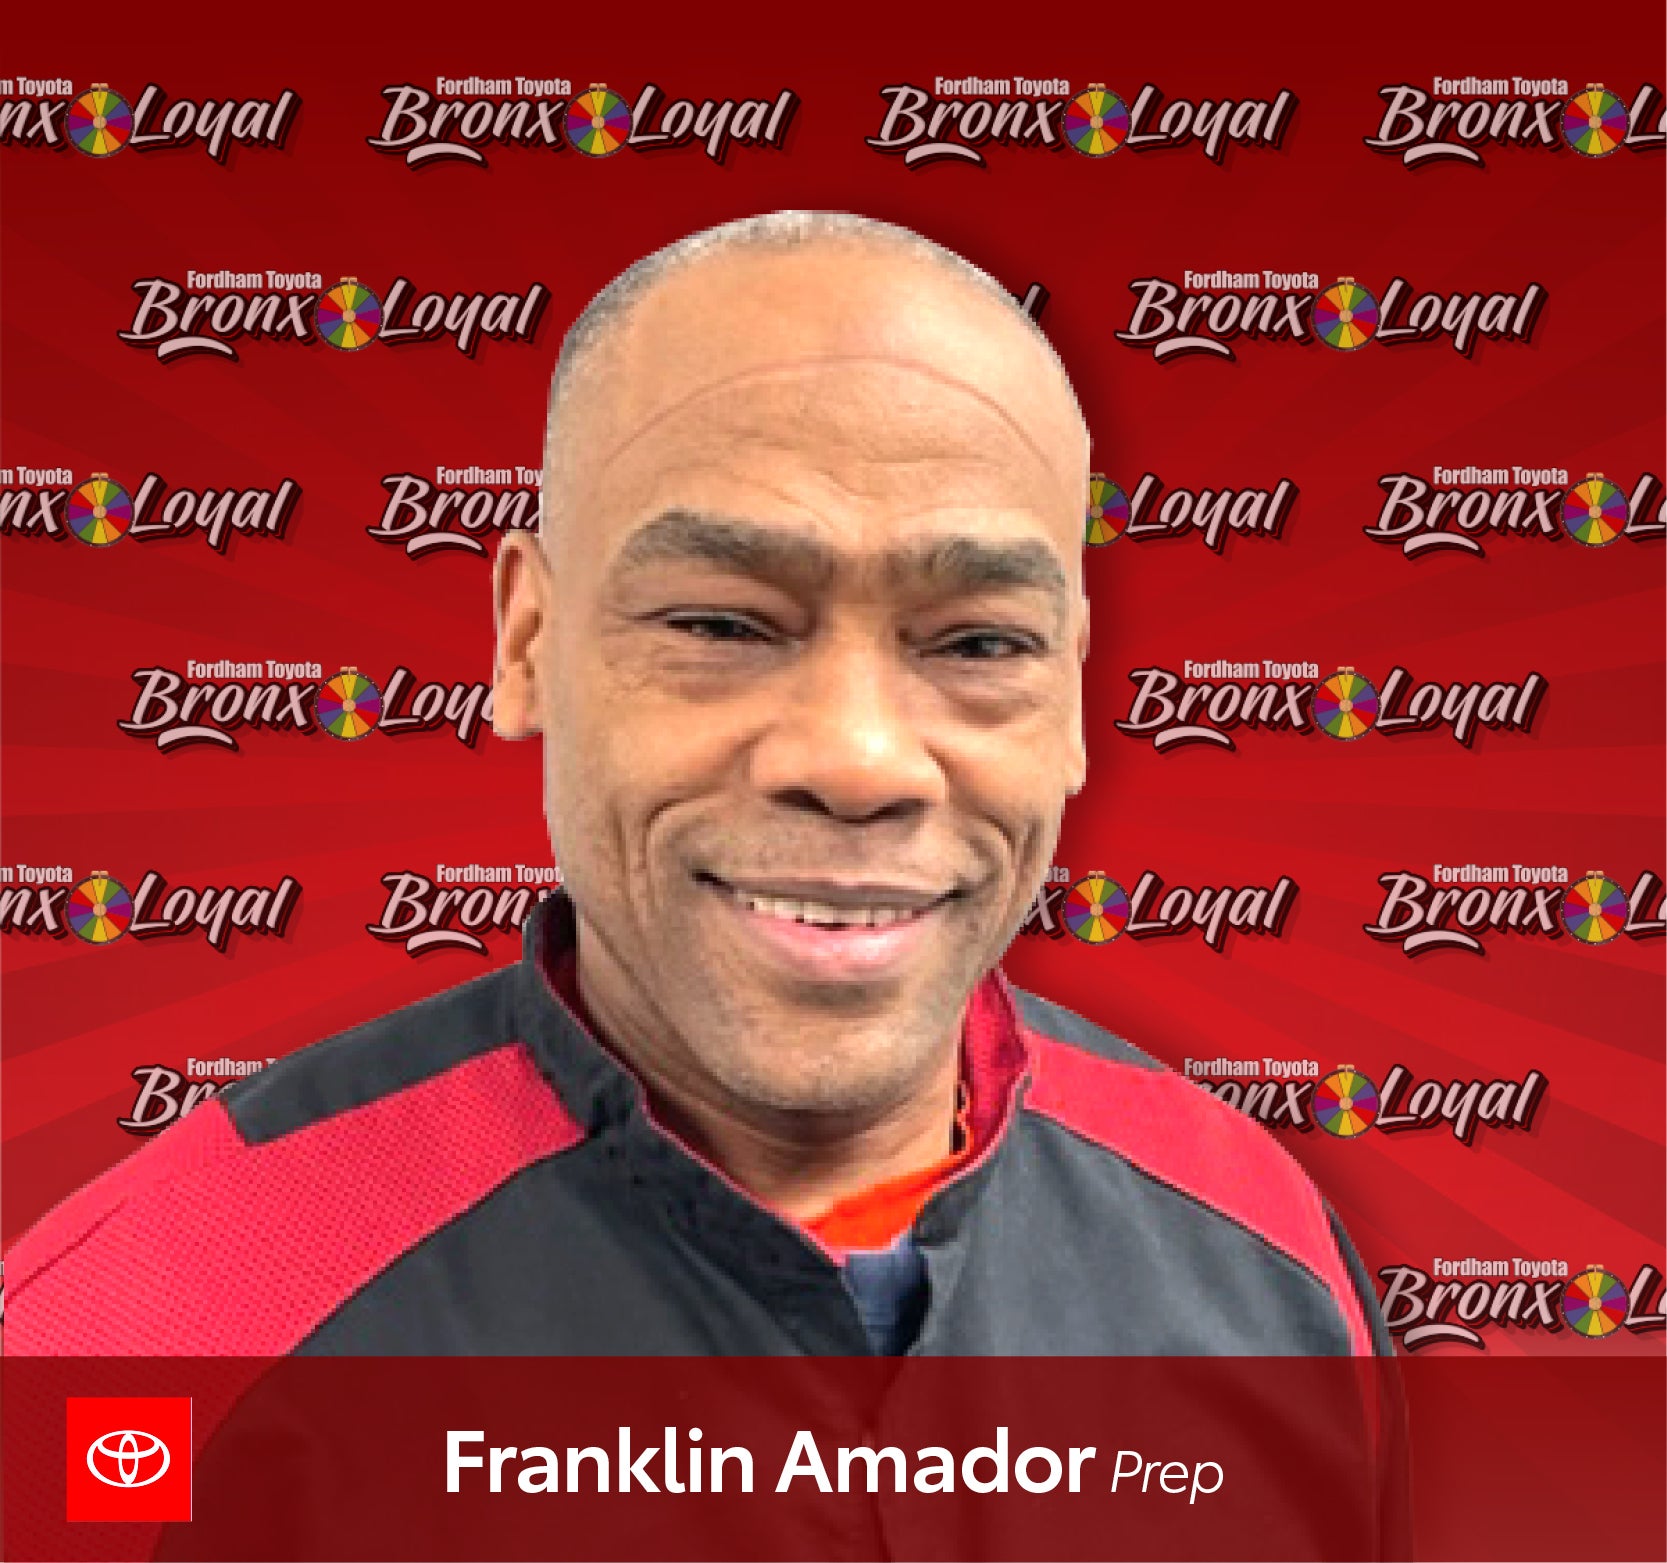 Franklin Amador